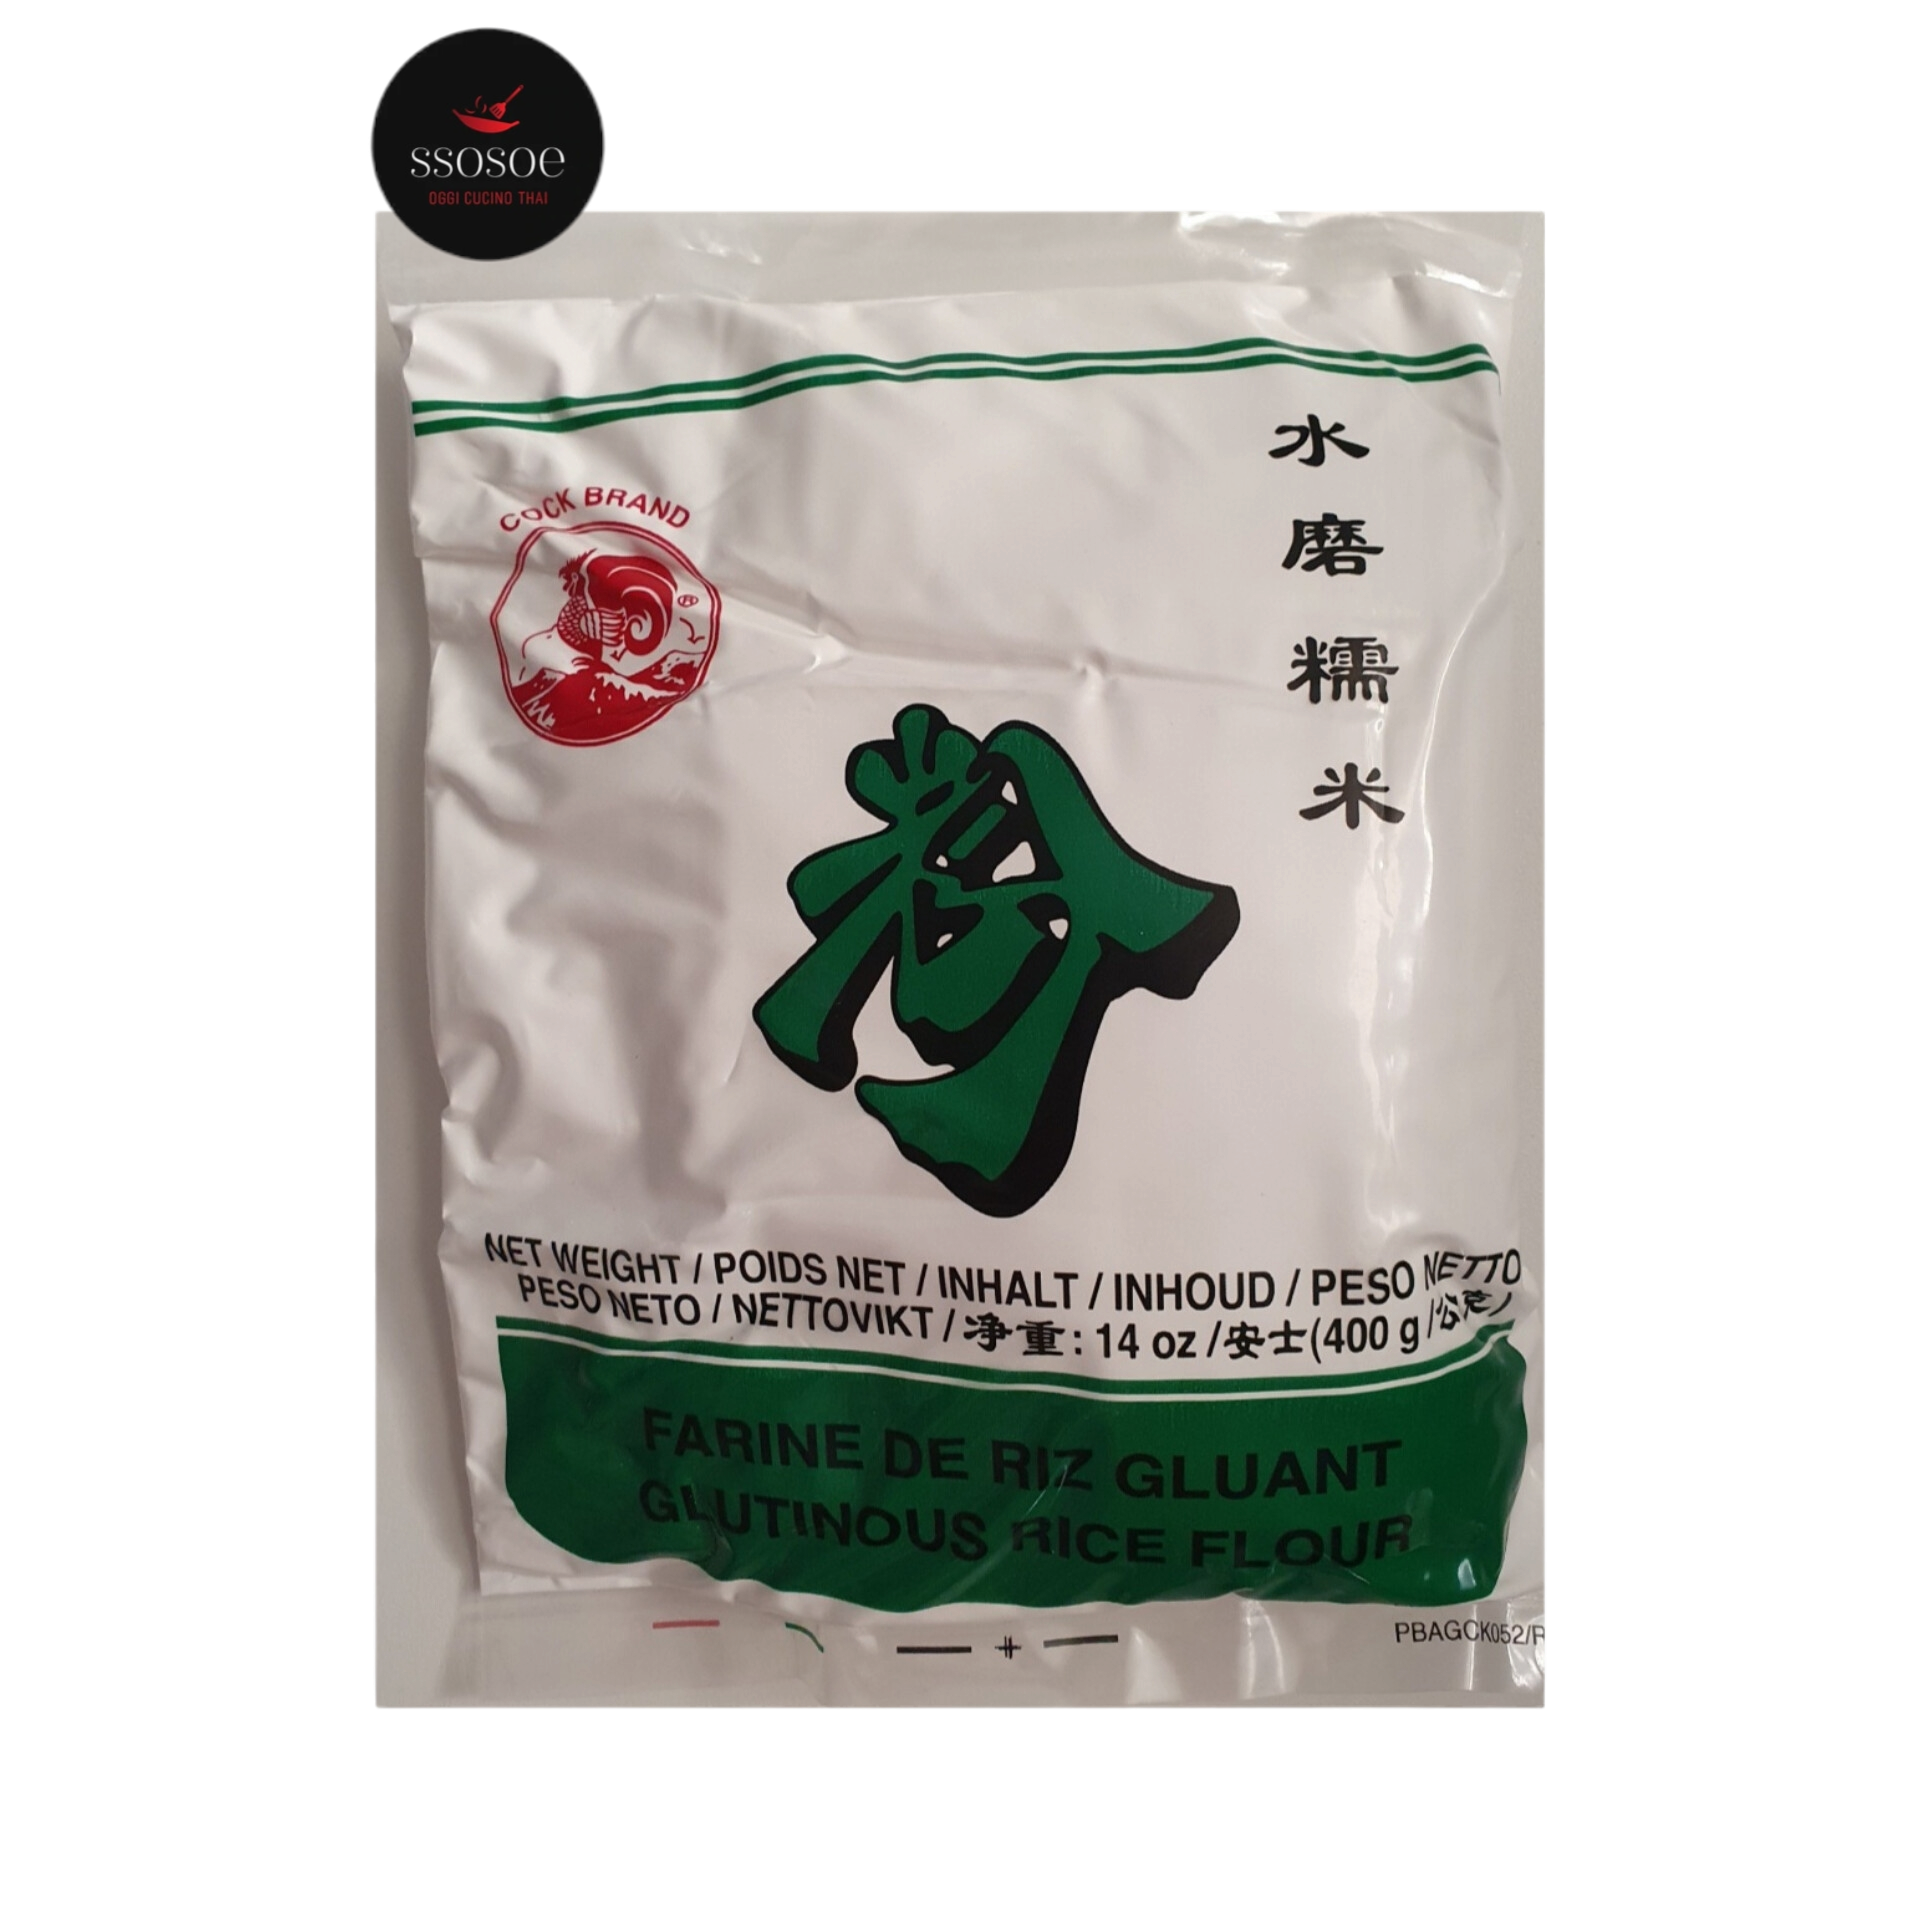 Farina di riso glutinoso*cock brand 400g – SSOSOE